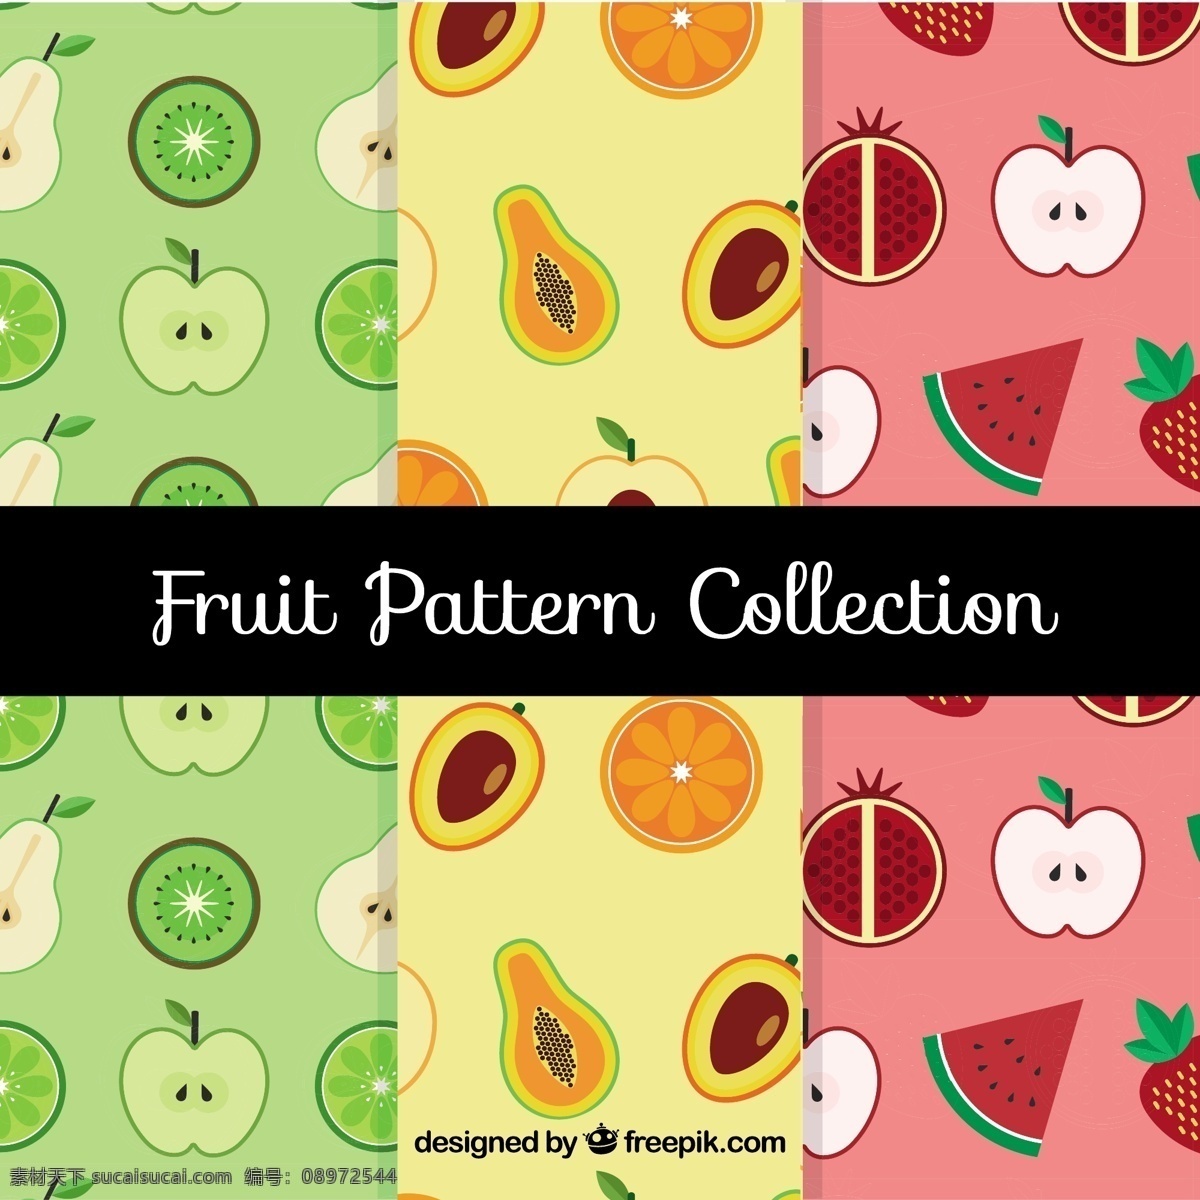 扁果型 背景 图案 食物 夏天 水果 颜色 苹果 平板 装饰 丰富多彩 无缝的图案 自然 健康 平面设计 草莓 自然背景